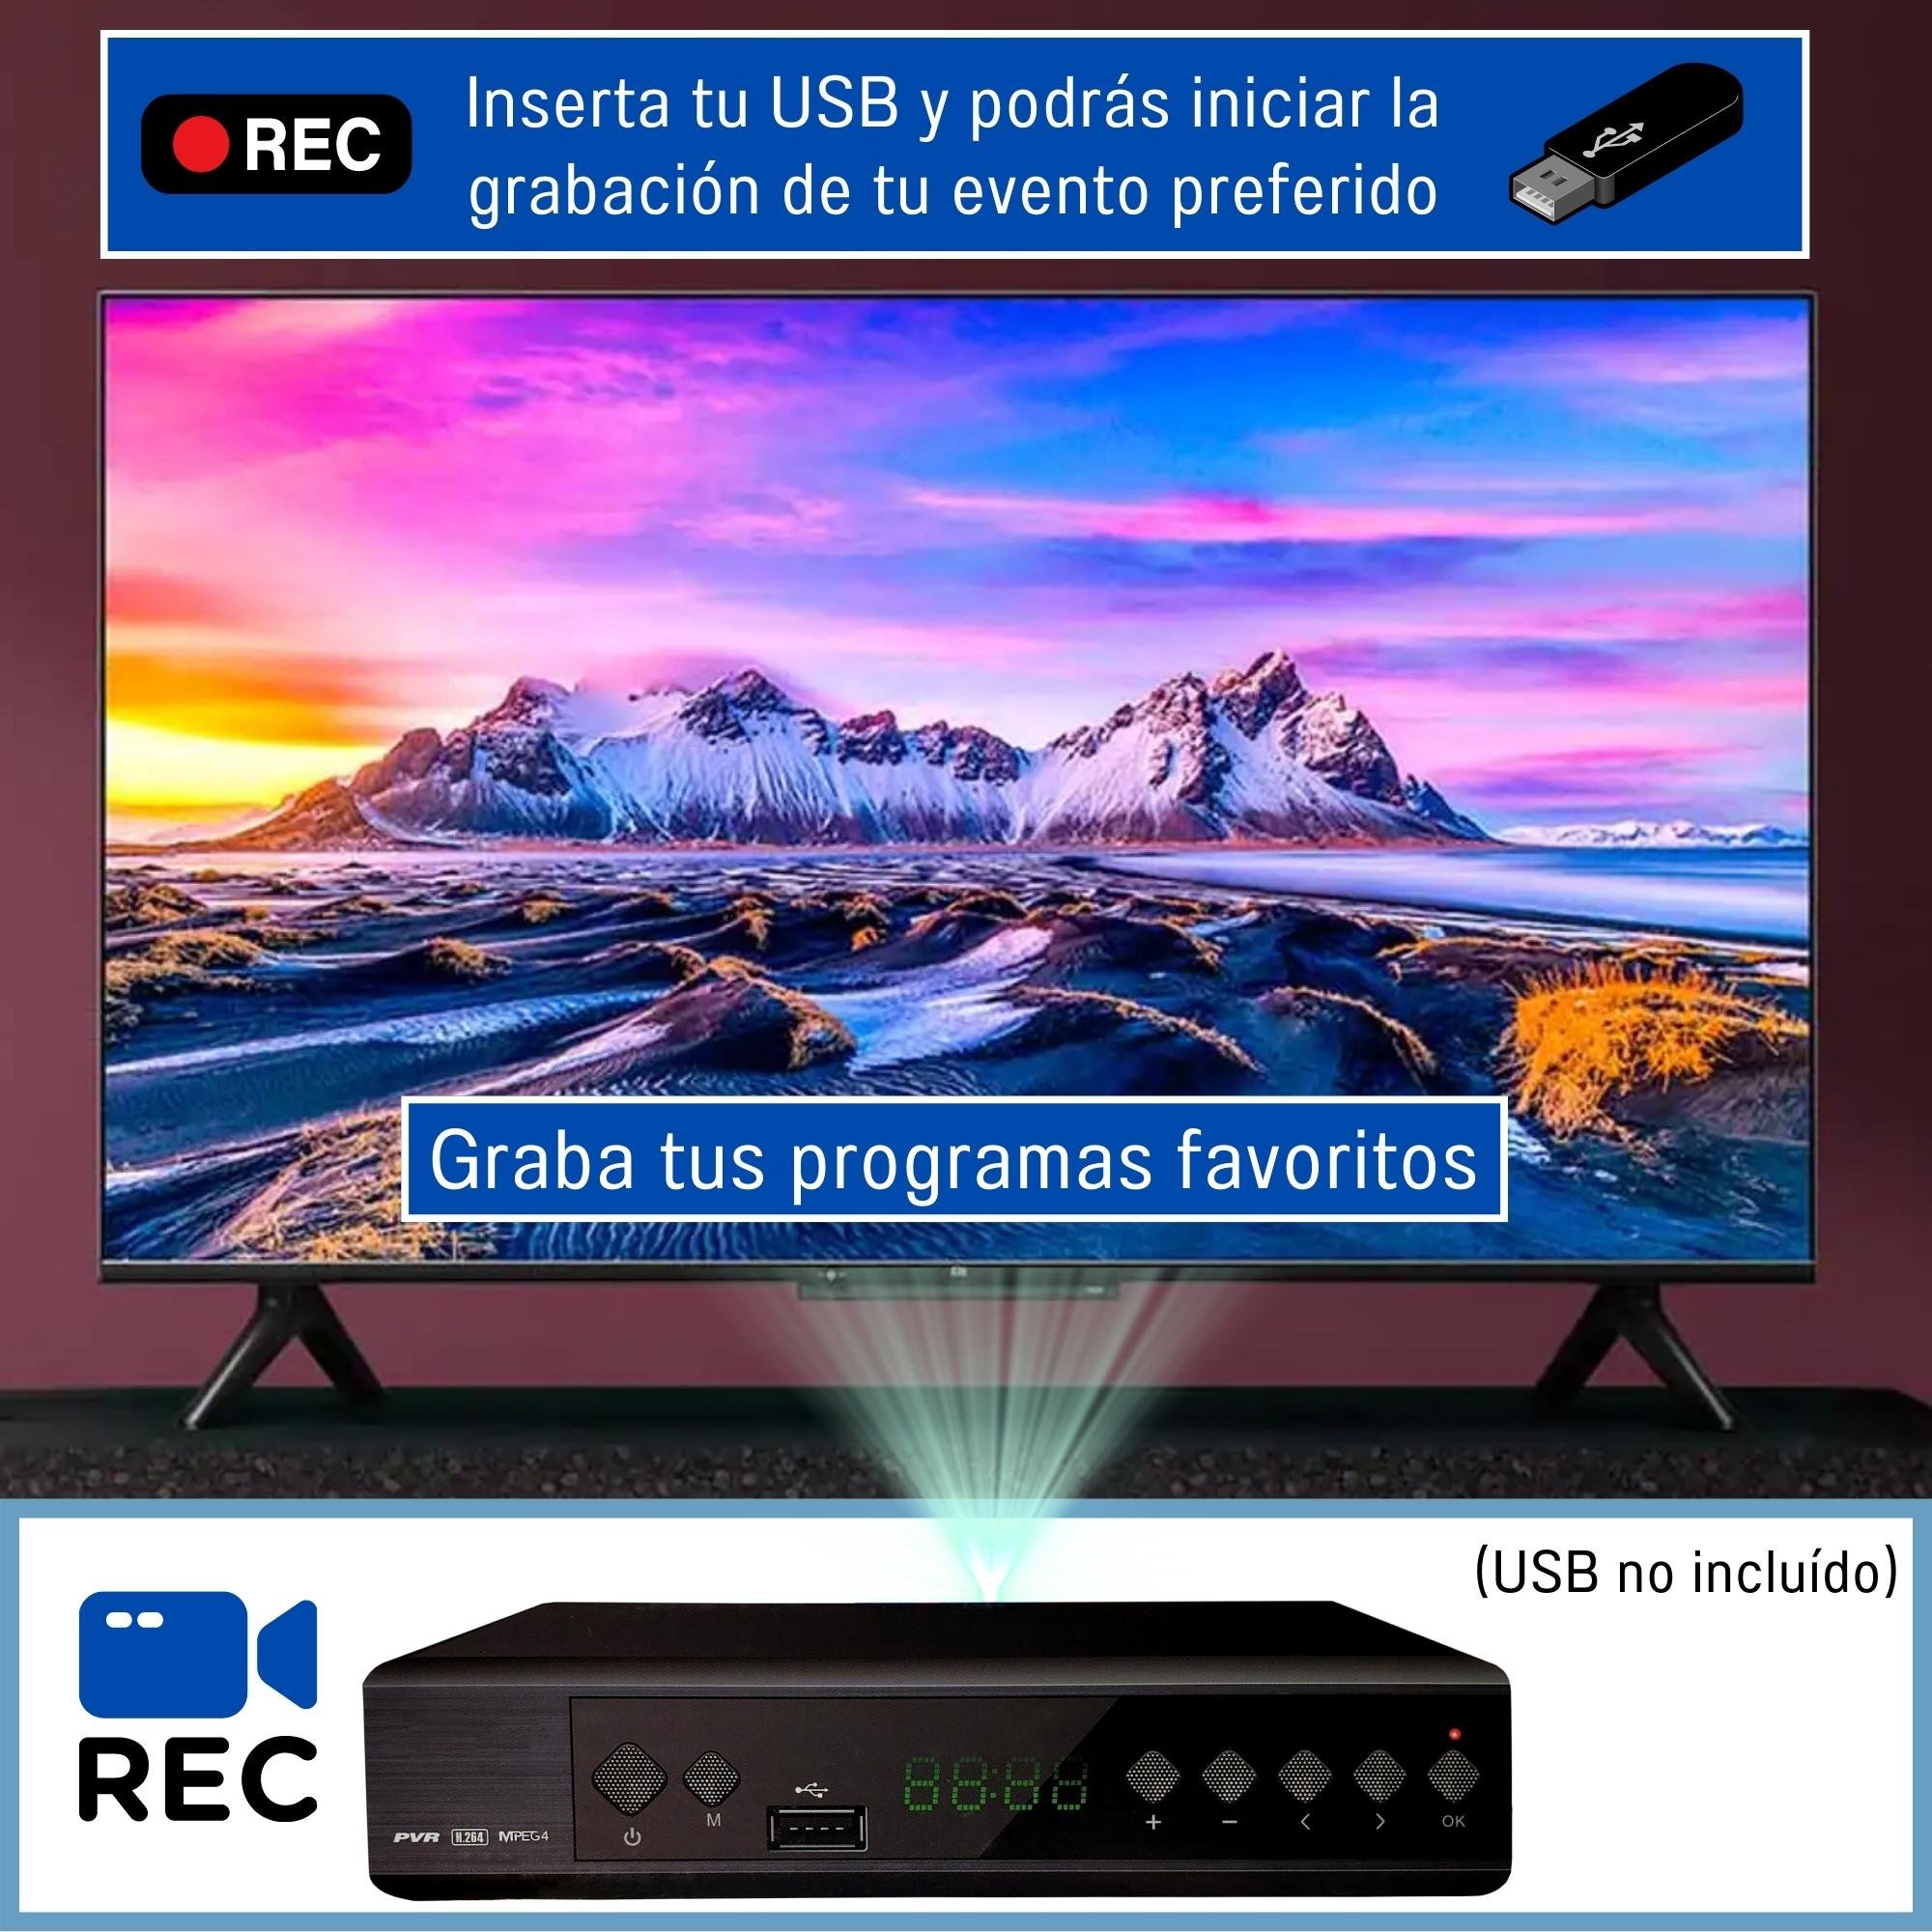 Fonoluz S.A. - CONVERSOR DE TV ANALÓGICO A DIGITAL HD. No tires tu televisor,  podes ver en calidad HD los canales de aire que transmiten en forma  digital‼️ . 📌DECODIFICADOR / CONVERSOR